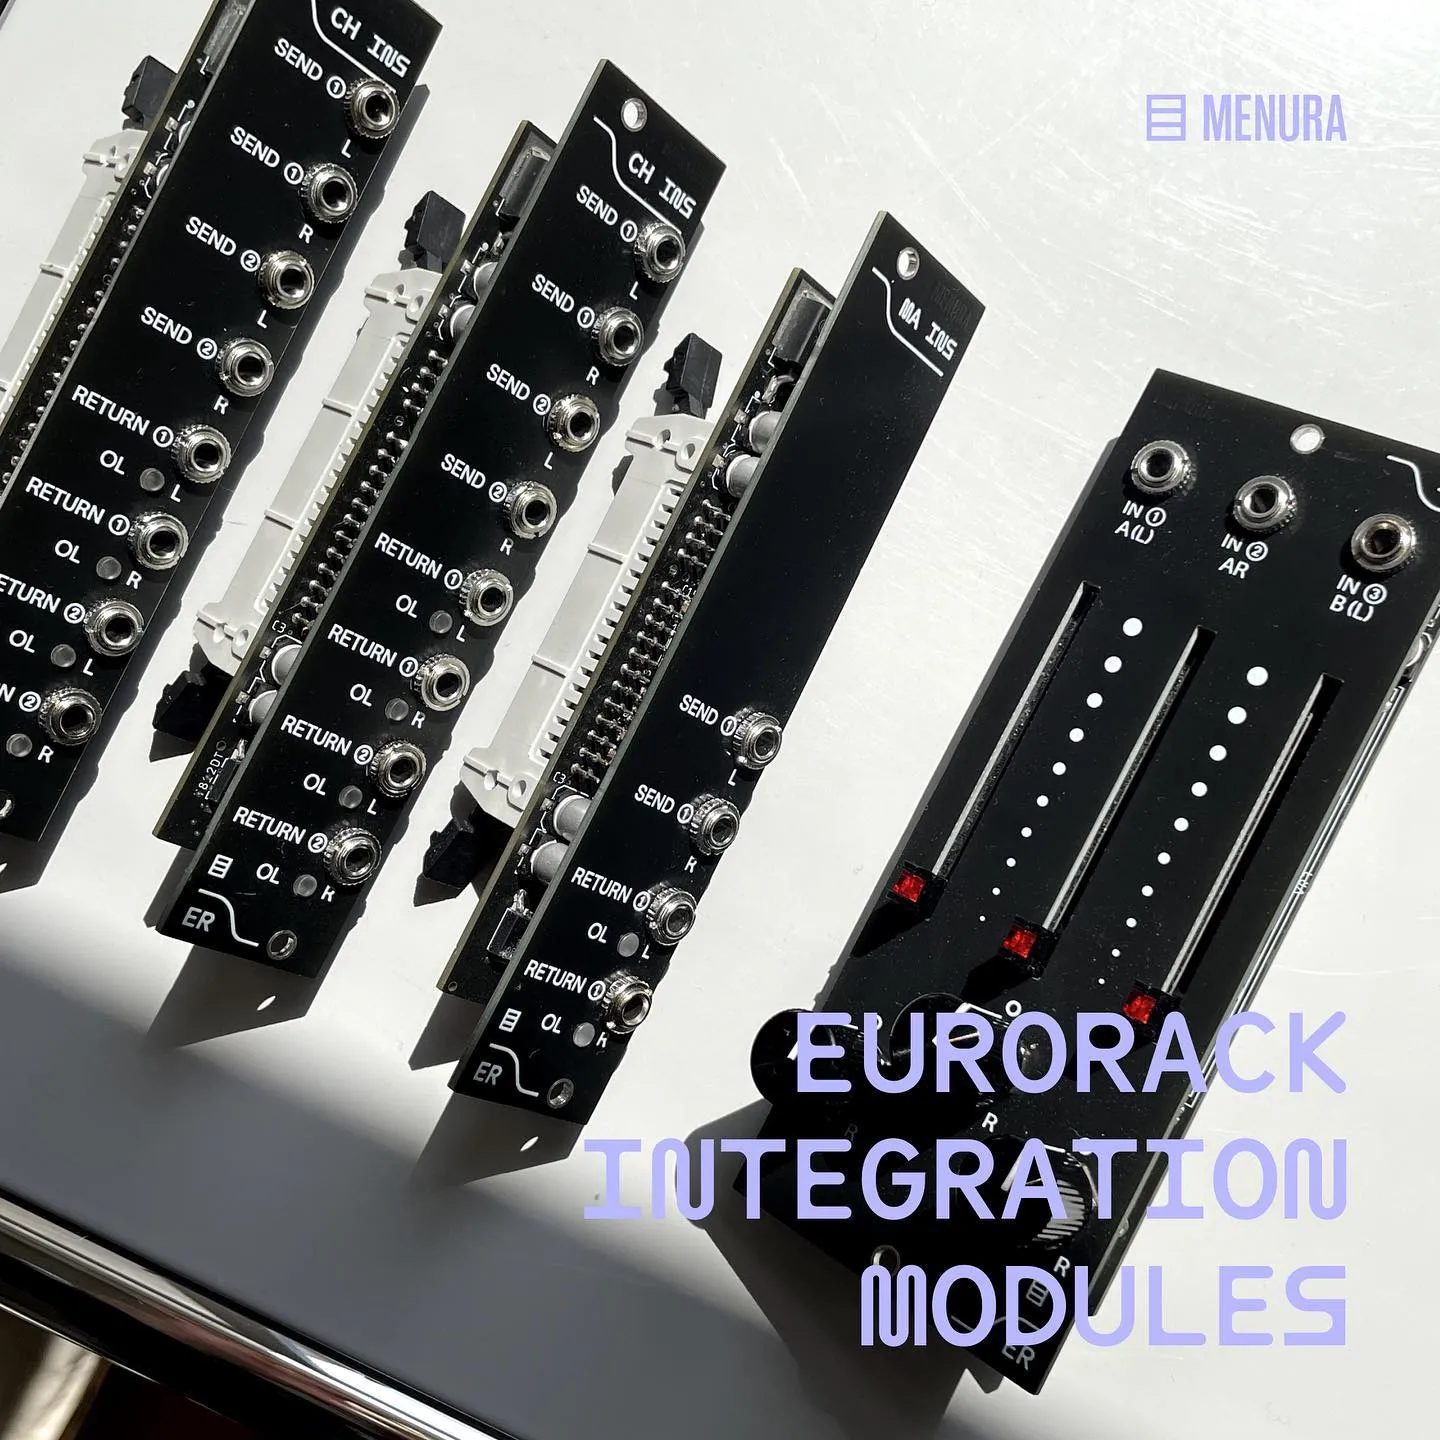 Menura MDMX Kickstarter success highlights demand for external mixers for Eurorack